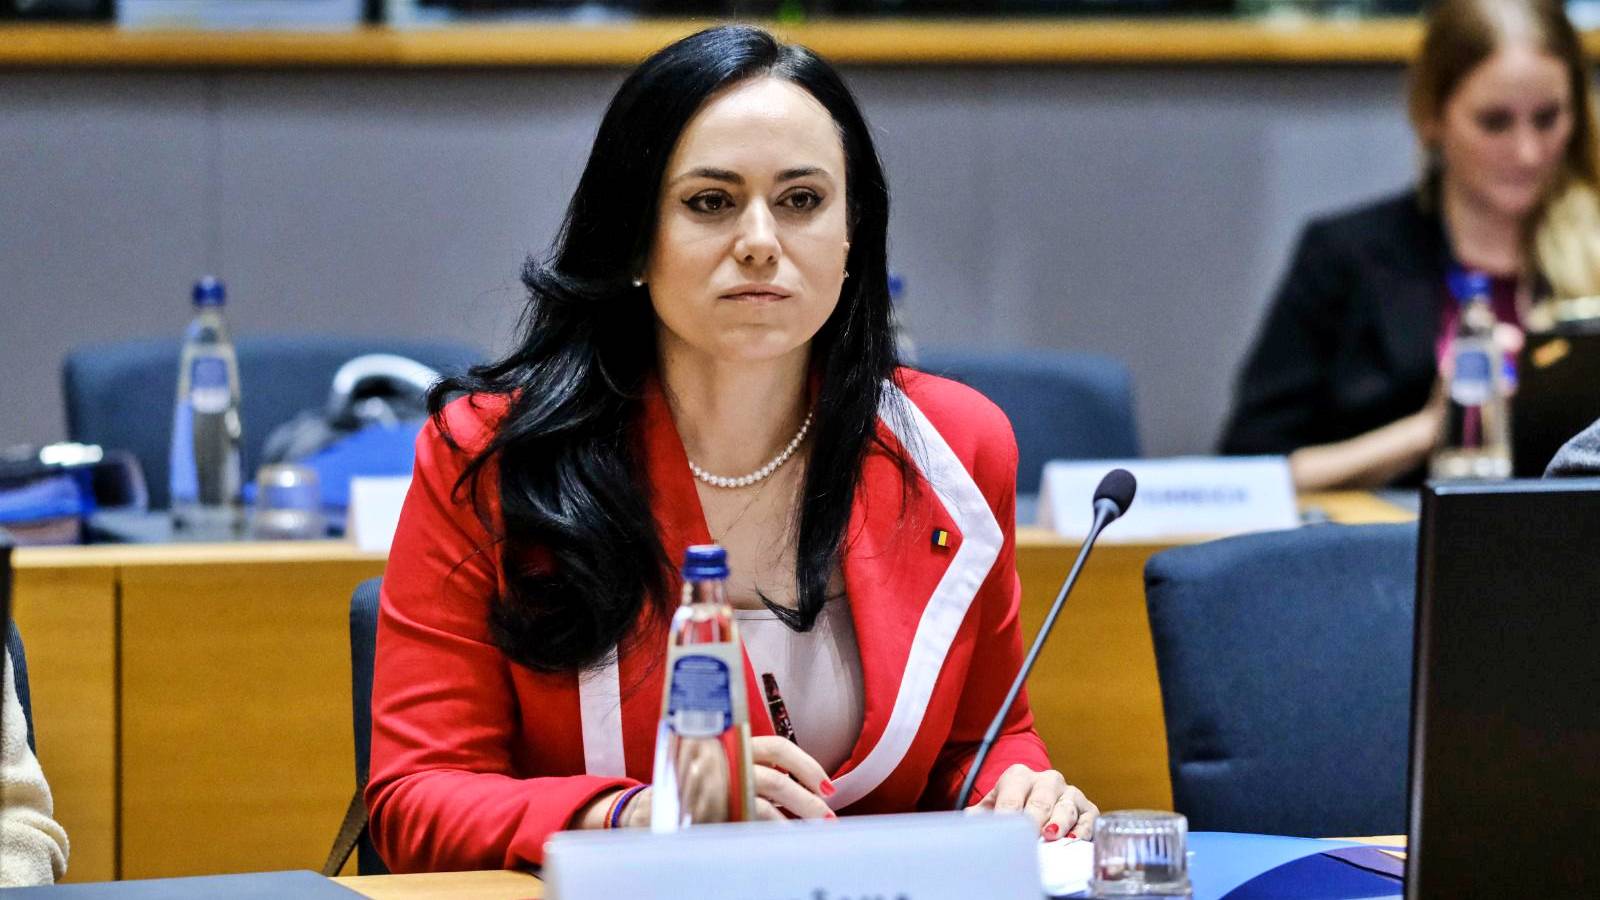 Pasul Oficial ULTIM MOMENT Anuntat Simona Bucura-Oprescu pentru Romania Milioane Angajati